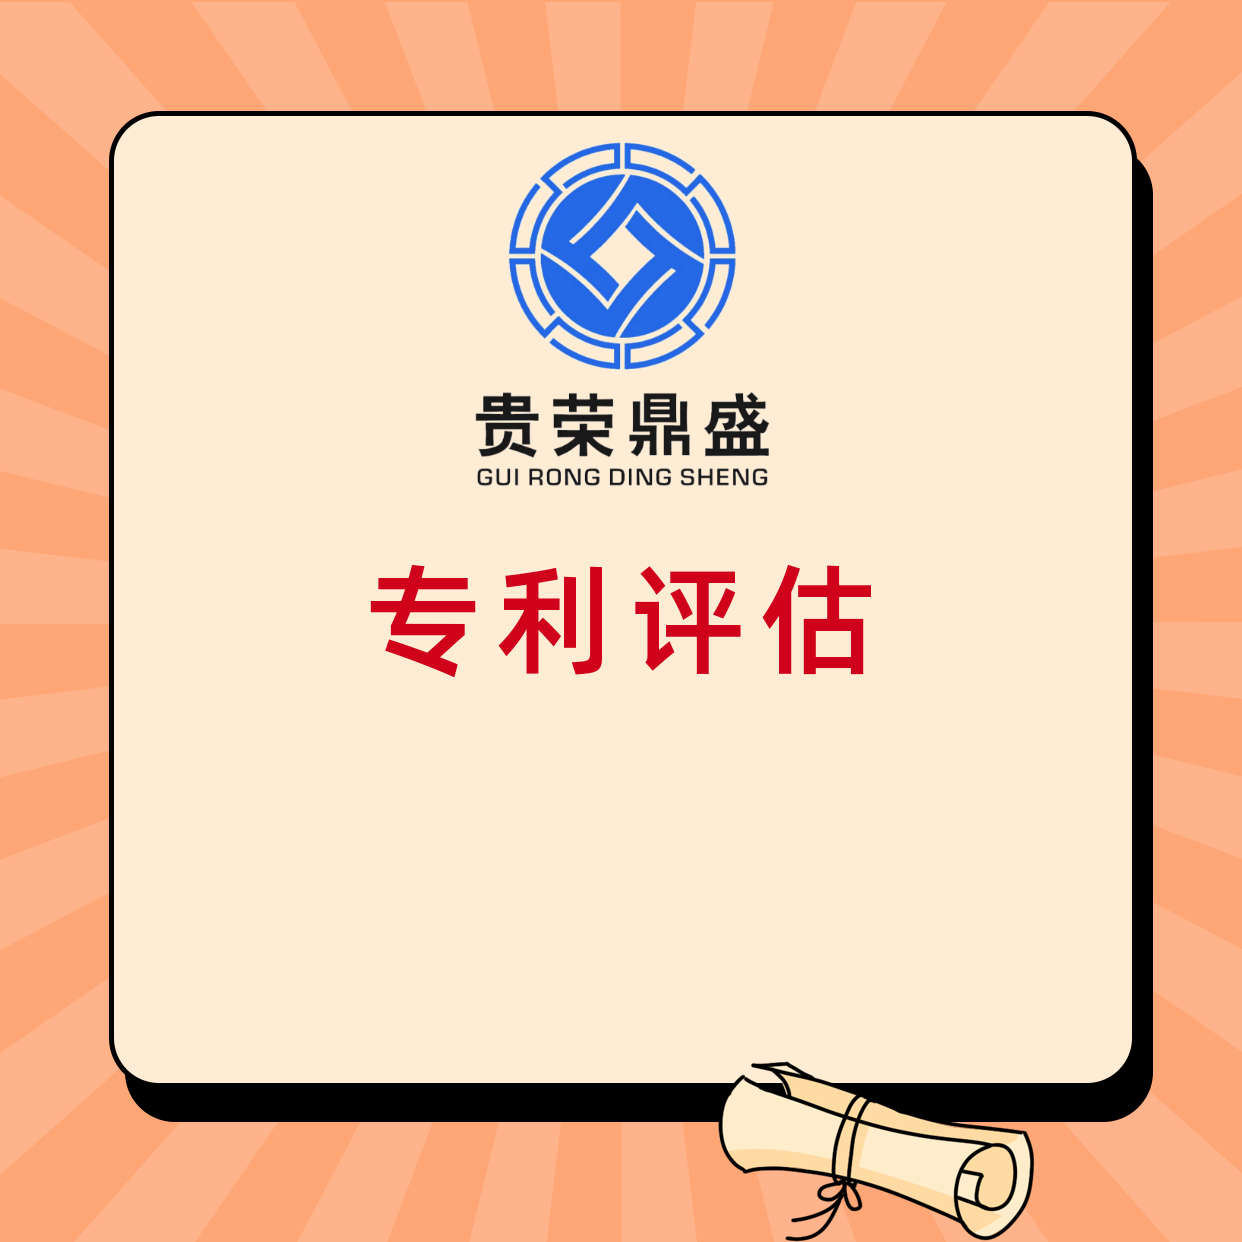 浙江省金华市知识产权评估公司专利评估机构